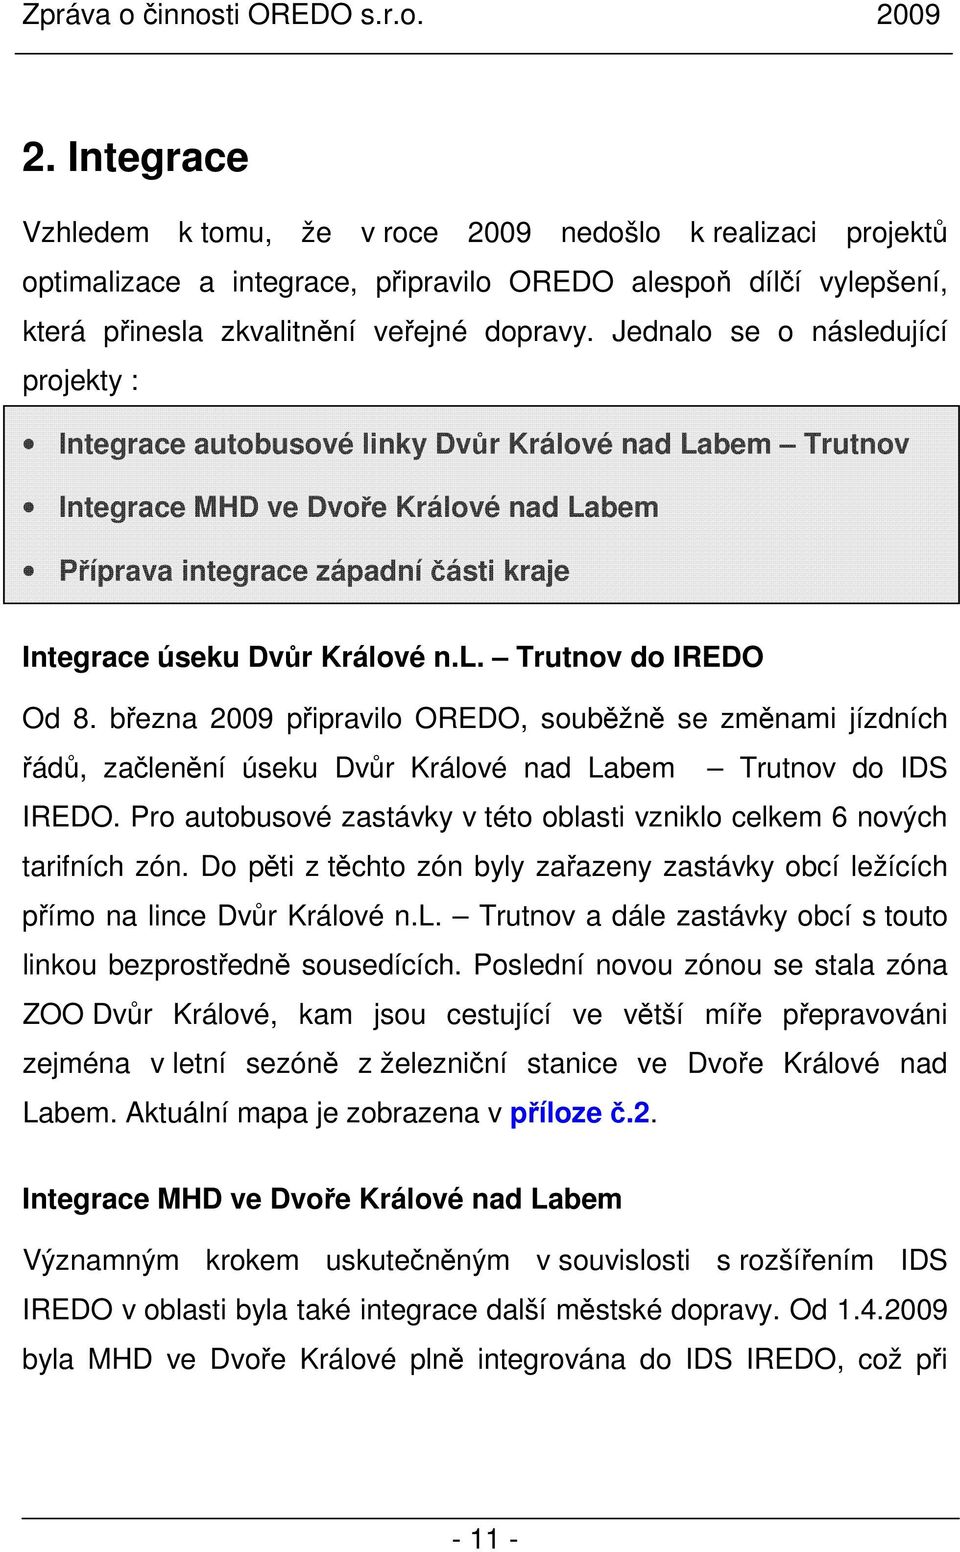 Králové n.l. Trutnov do IREDO Od 8. března 2009 připravilo OREDO, souběžně se změnami jízdních řádů, začlenění úseku Dvůr Králové nad Labem Trutnov do IDS IREDO.